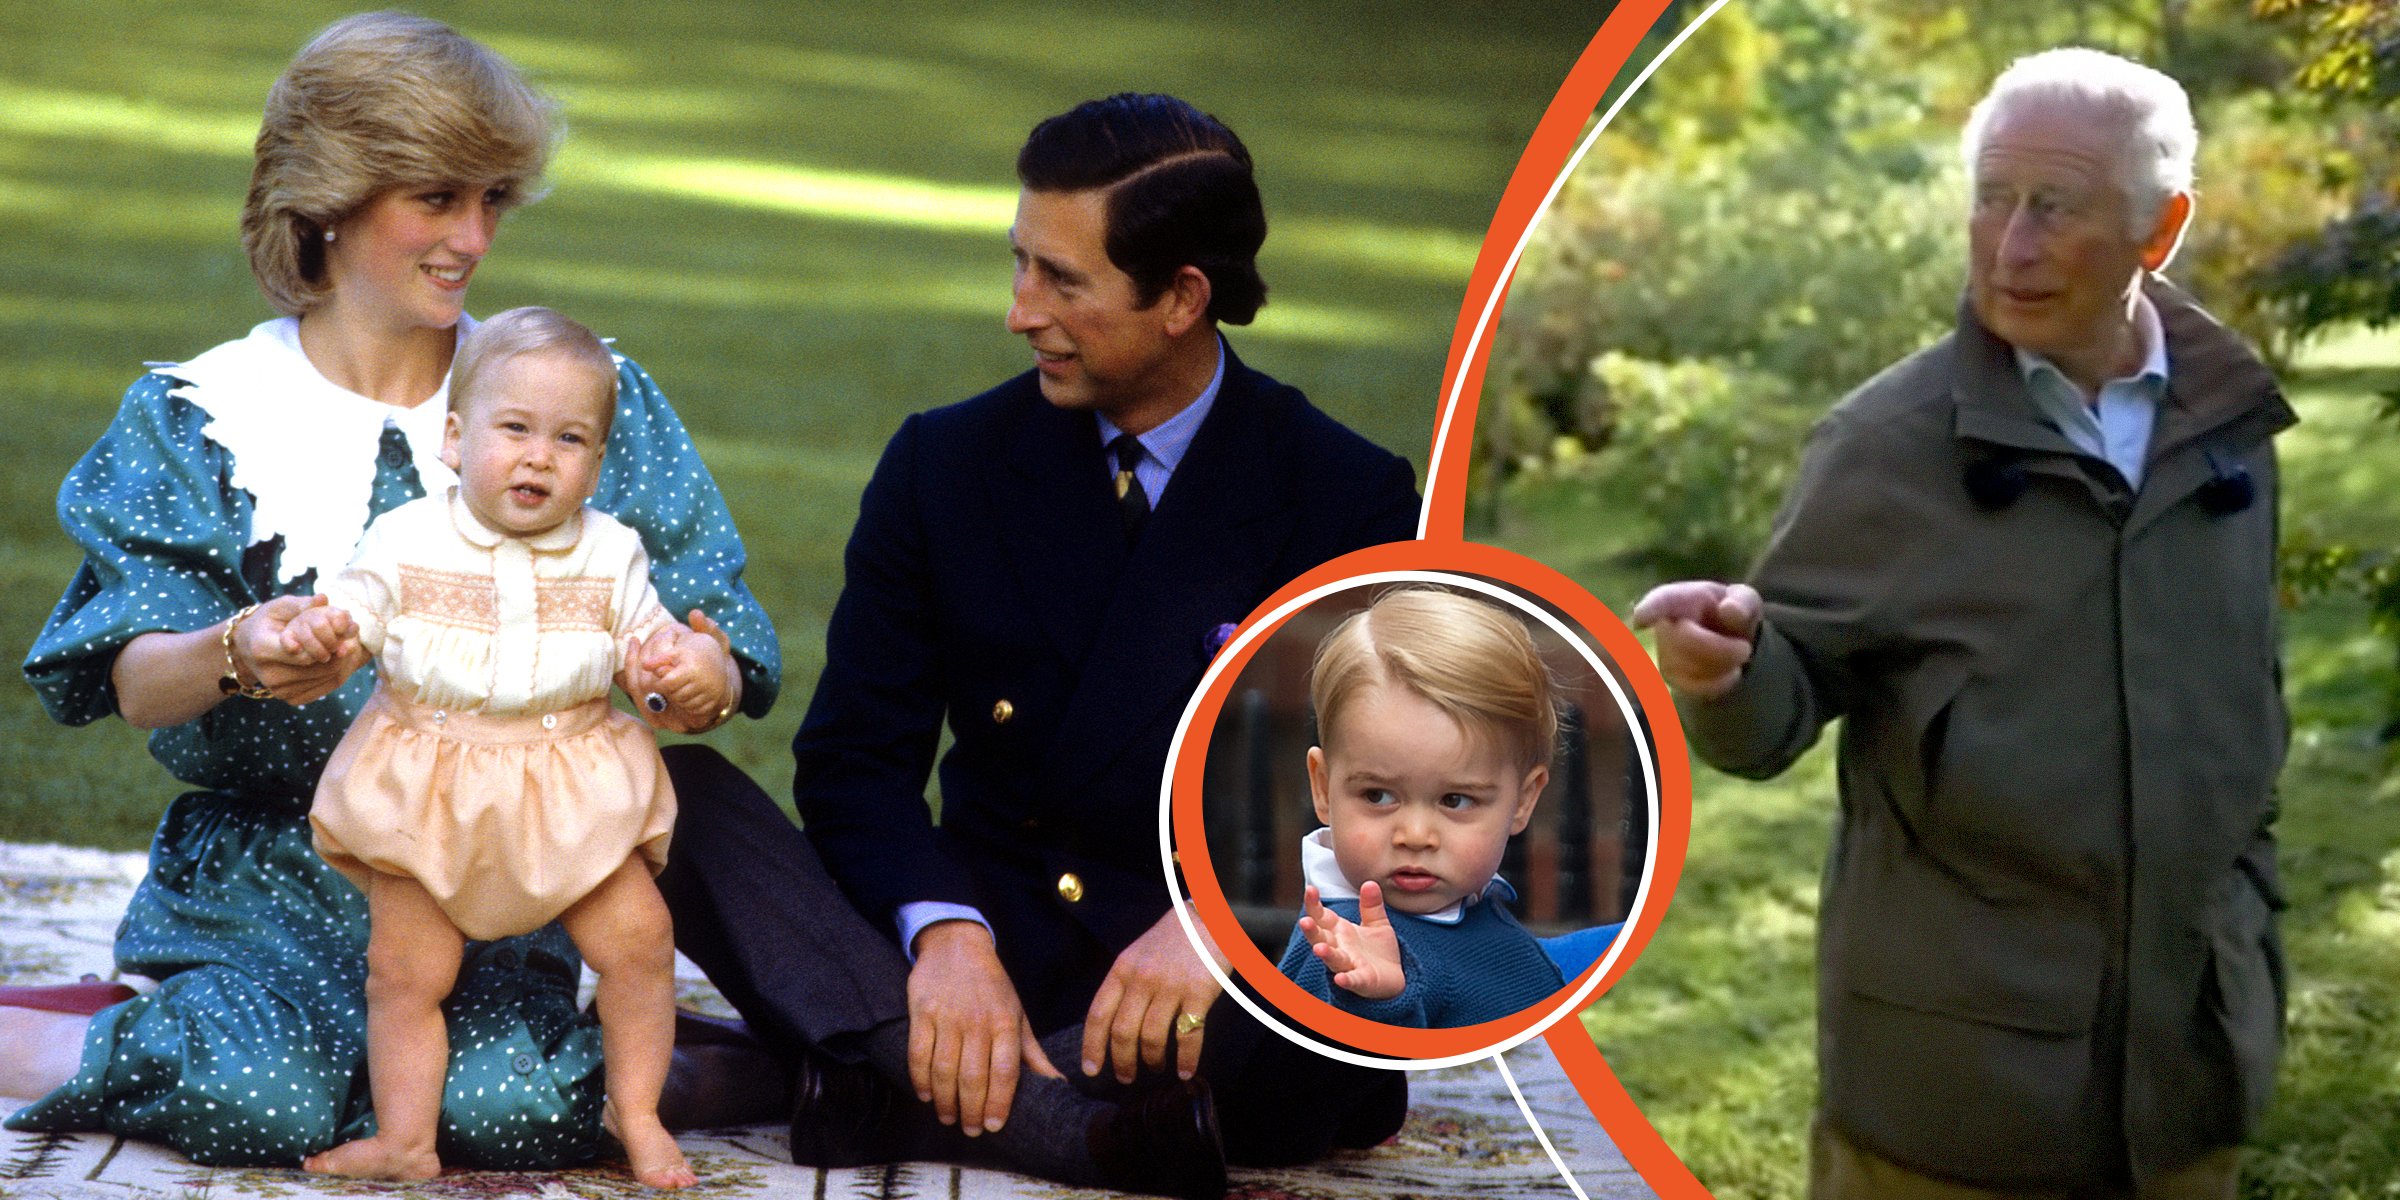 King Charles III, Princess Diana and Prince William | Prince George | King Charles III | Source: Getty Images | Youtube.com/BBC News